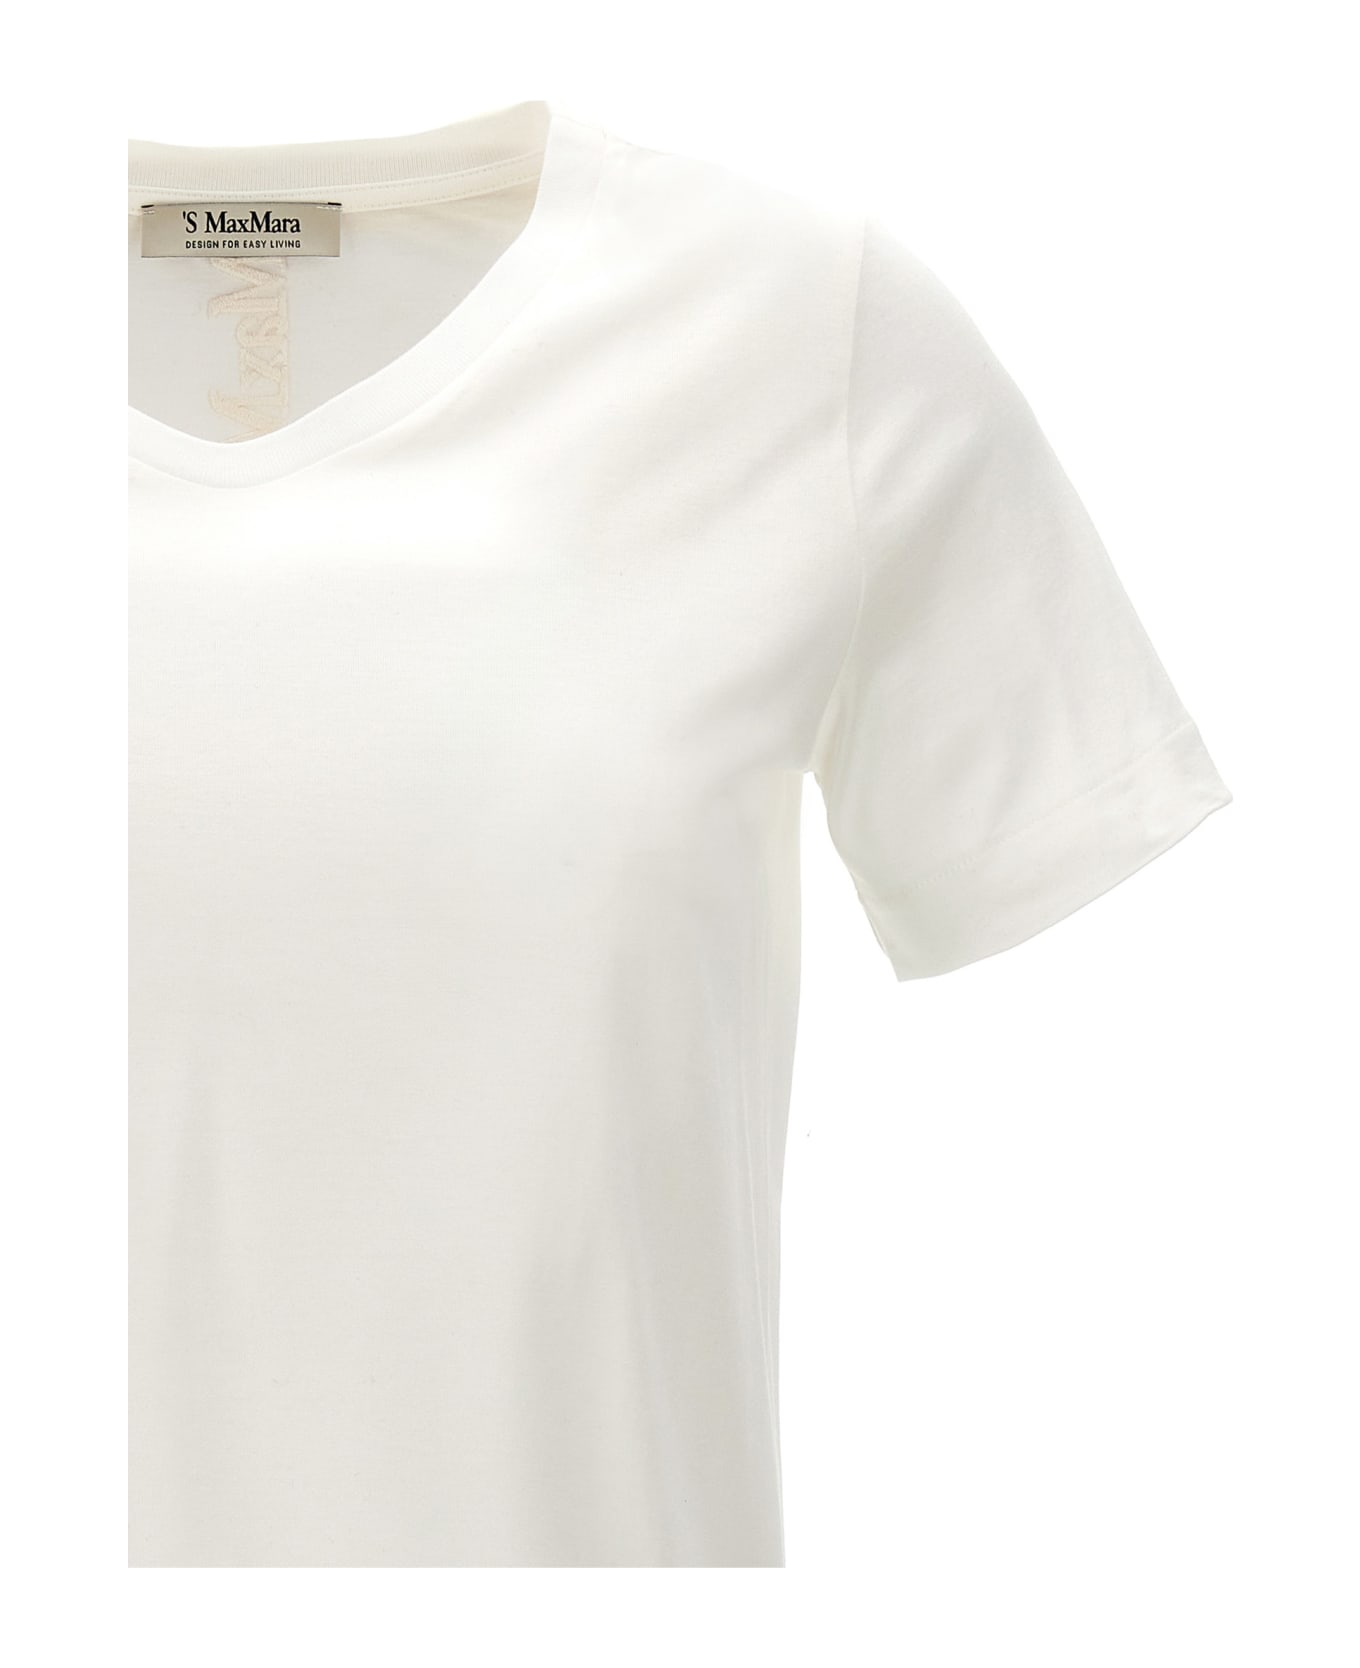 'S Max Mara 'quito' T-shirt - WHITE